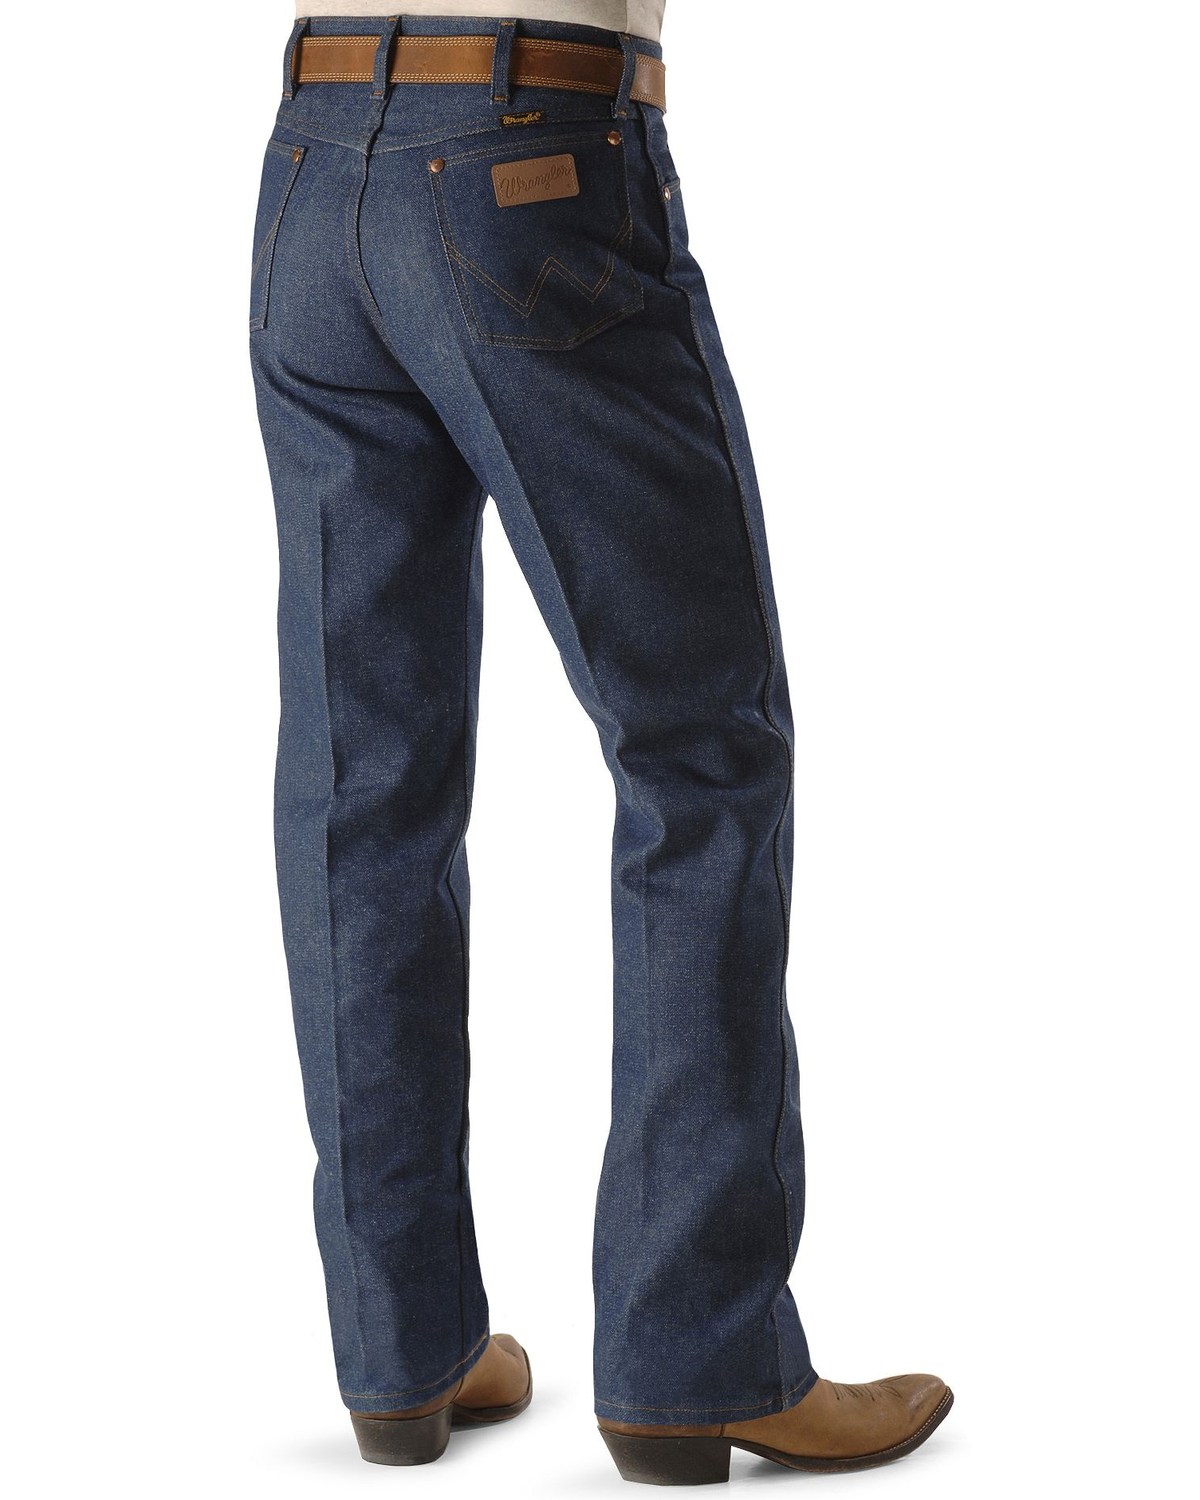 Wrangler Men's Rigid Cowboy Cut Original Fit Dress Jeans